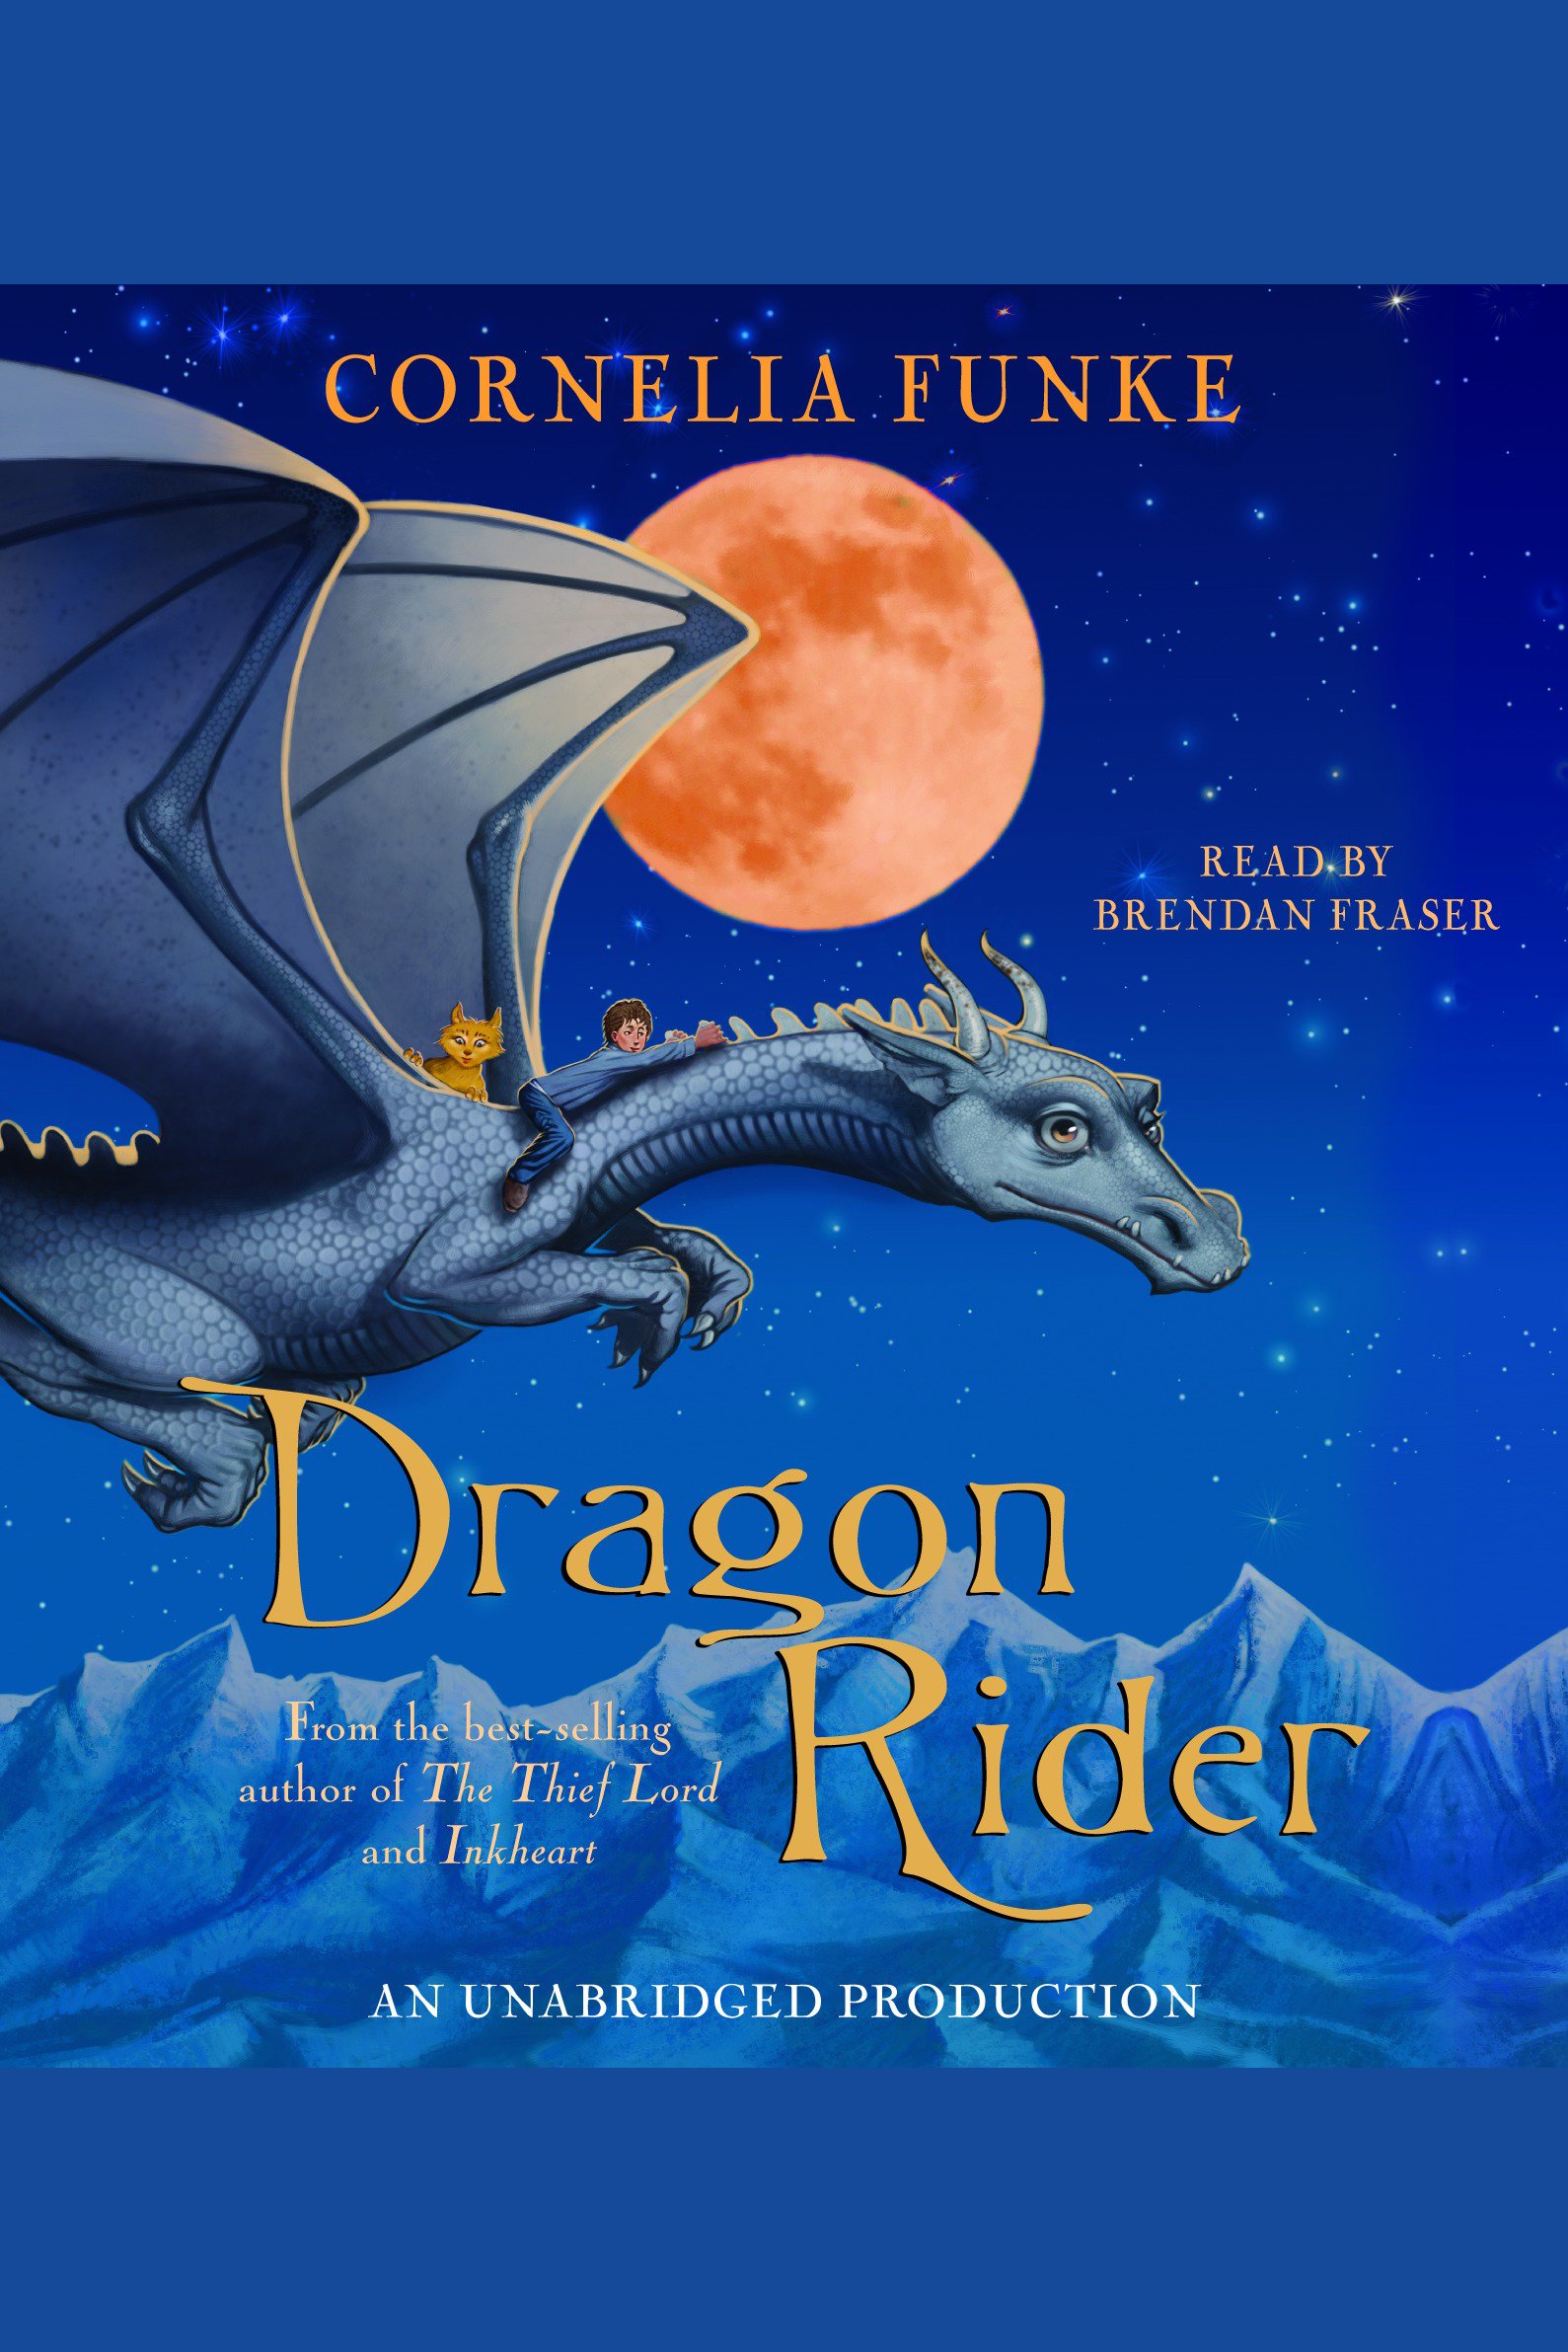 Dragon rider cover image